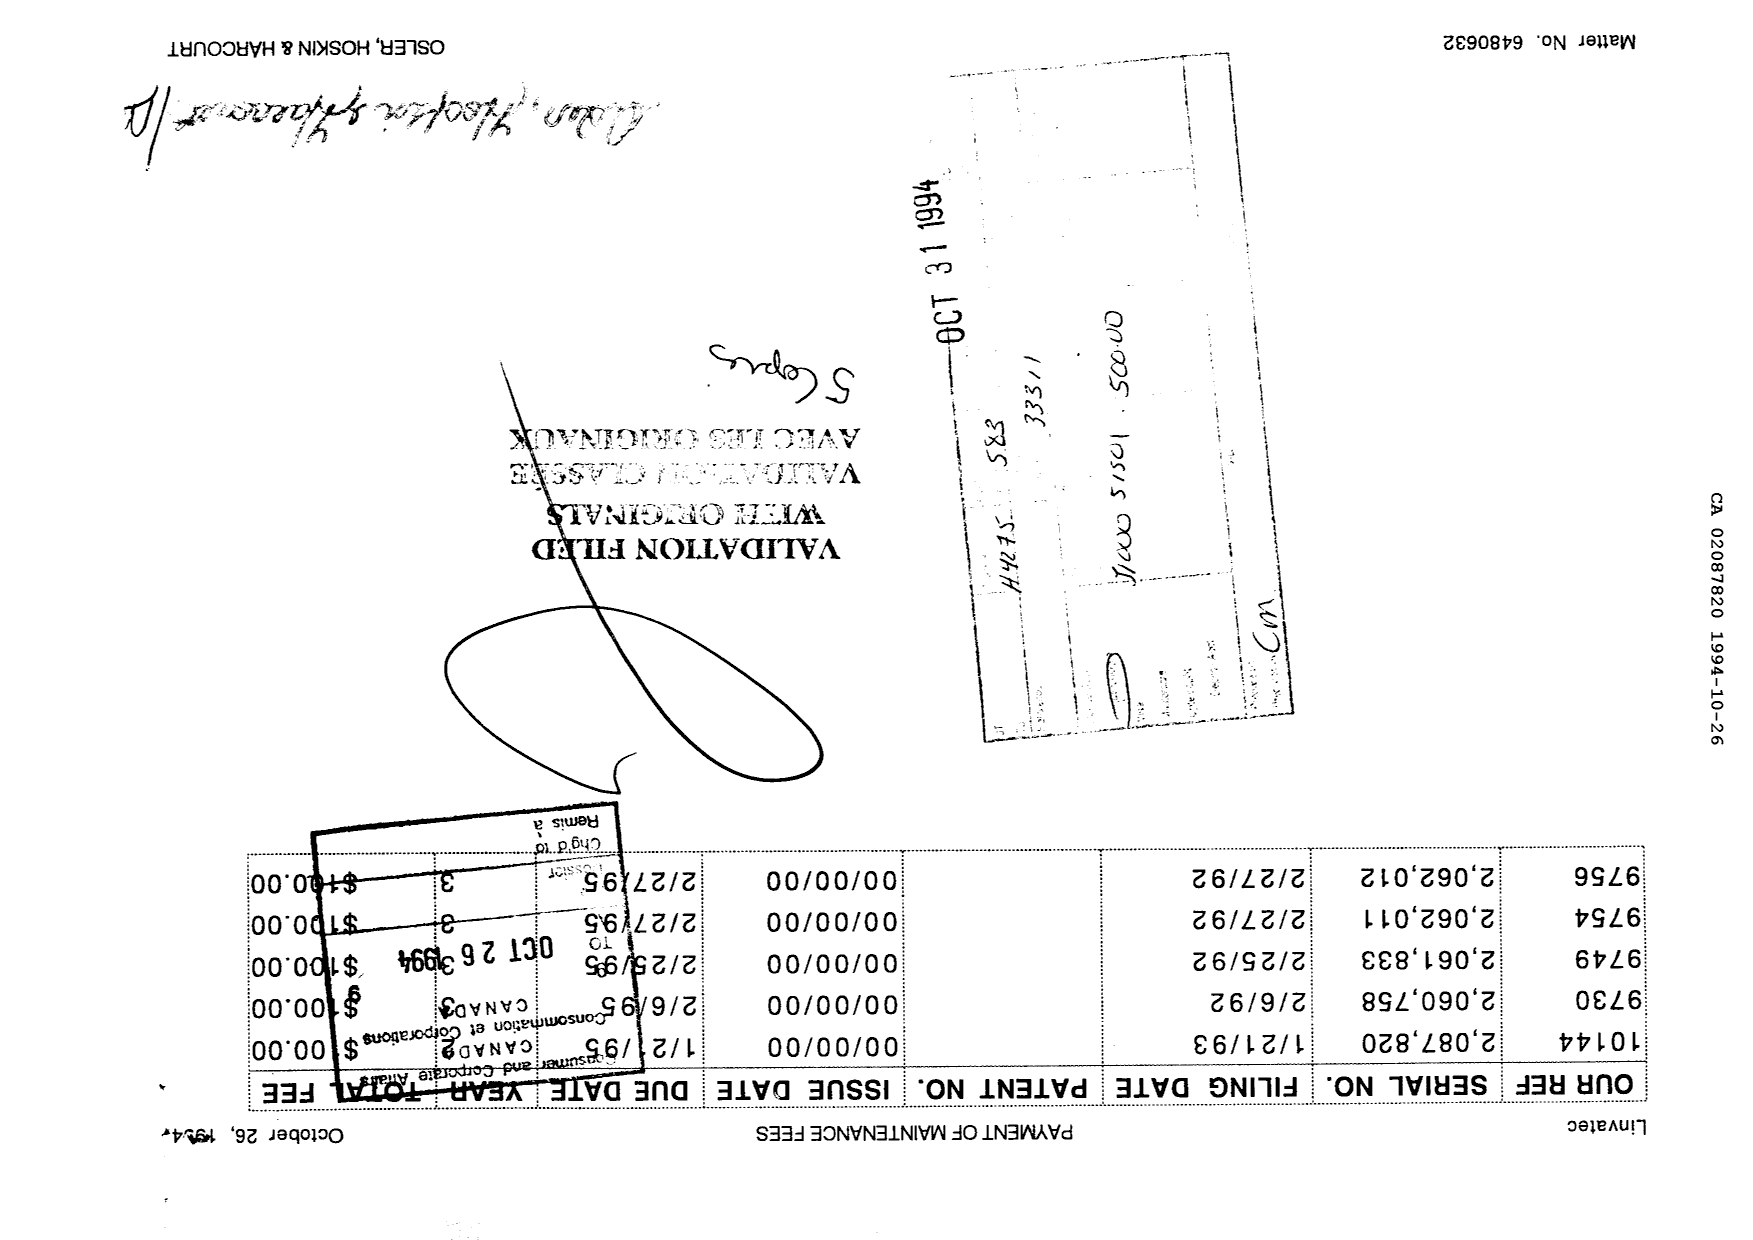 Document de brevet canadien 2087820. Taxes 19931226. Image 1 de 1